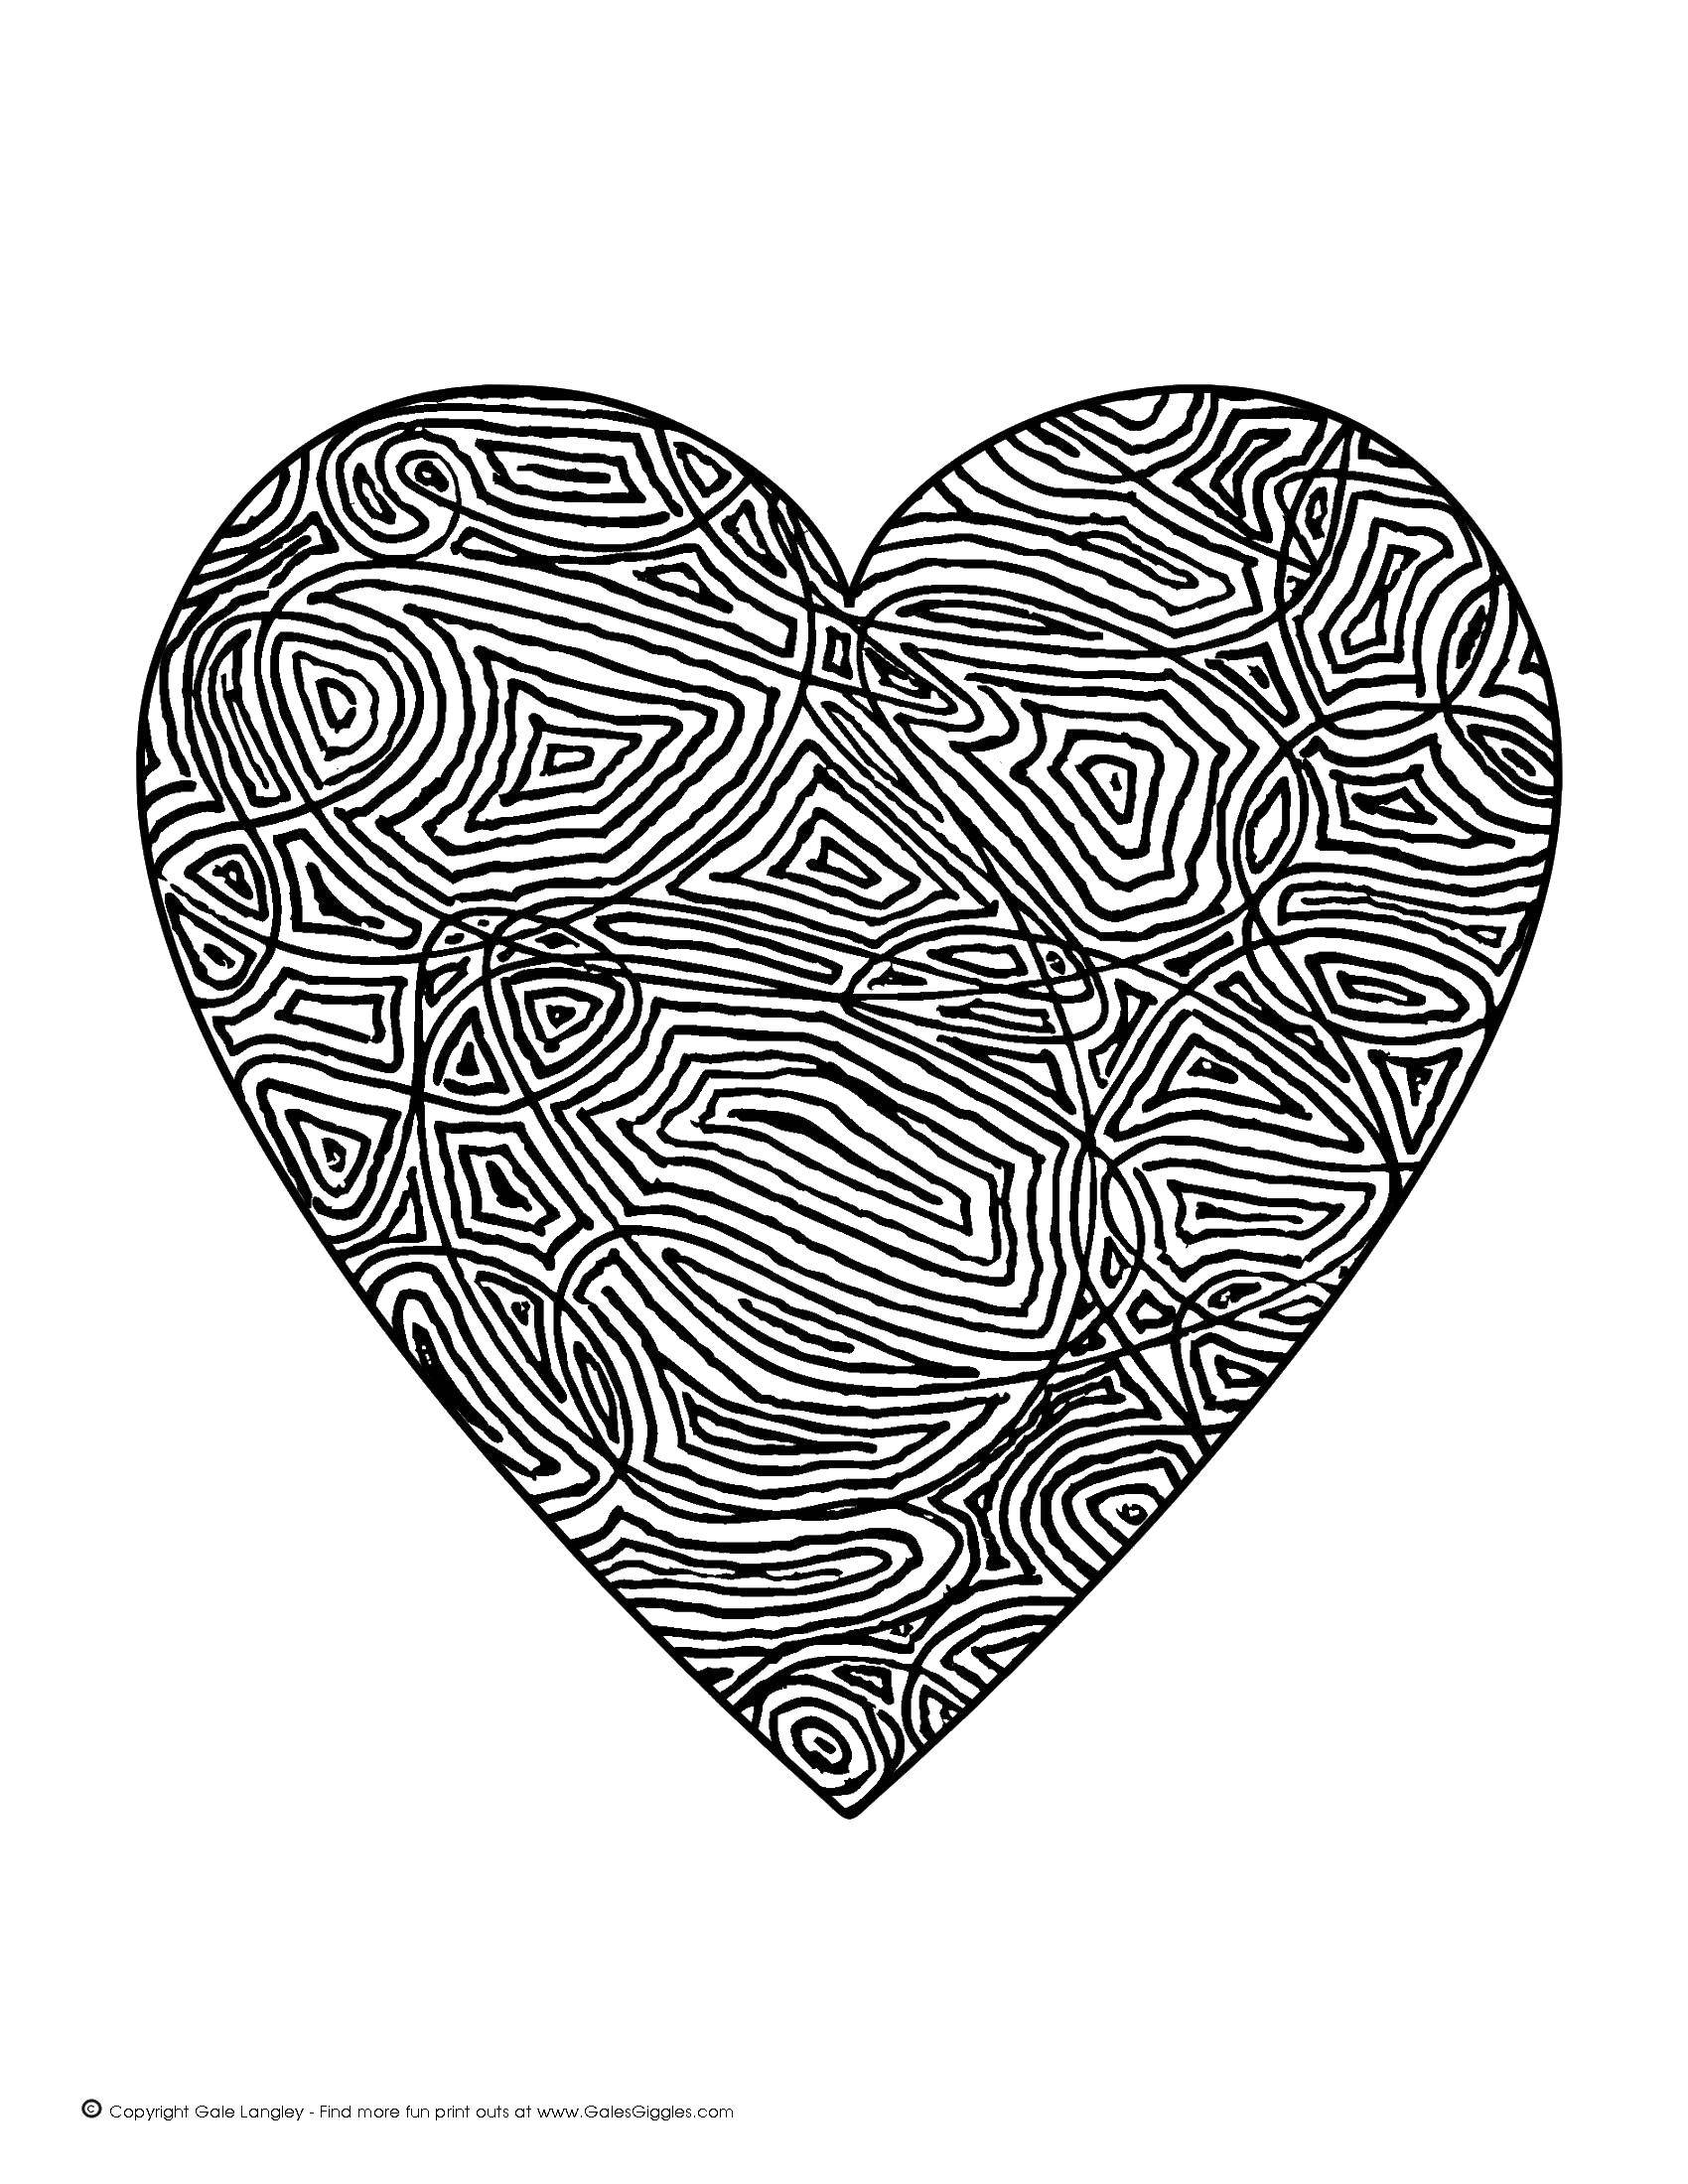 Название: Раскраска Сердце в узорах. Категория: Сердечки. Теги: форма, сердце.